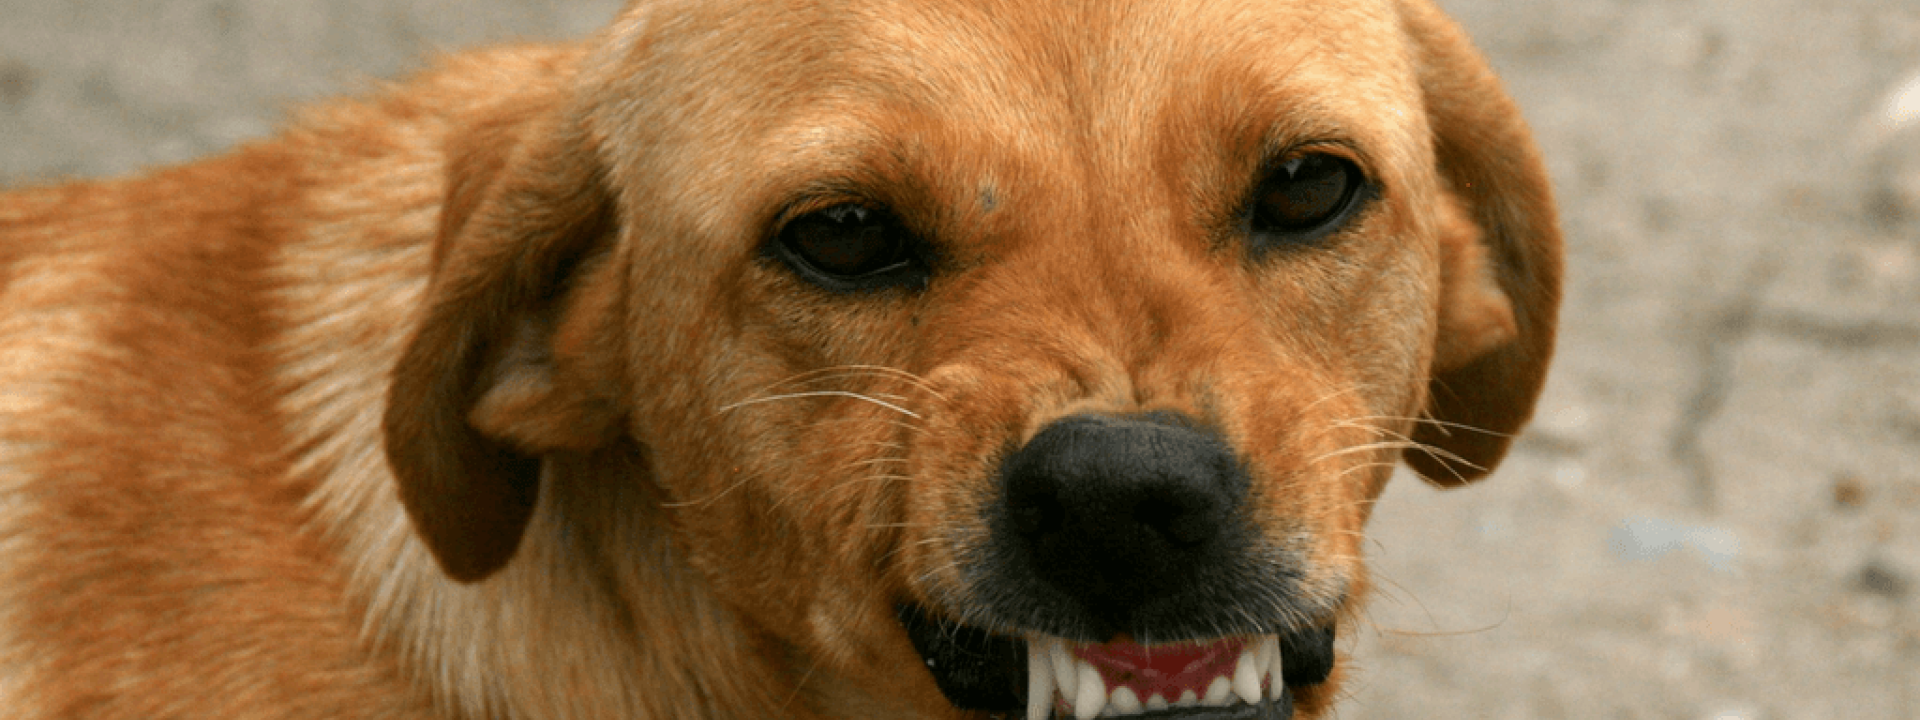 Dog-Bite-Prevention-Blog-Header.png